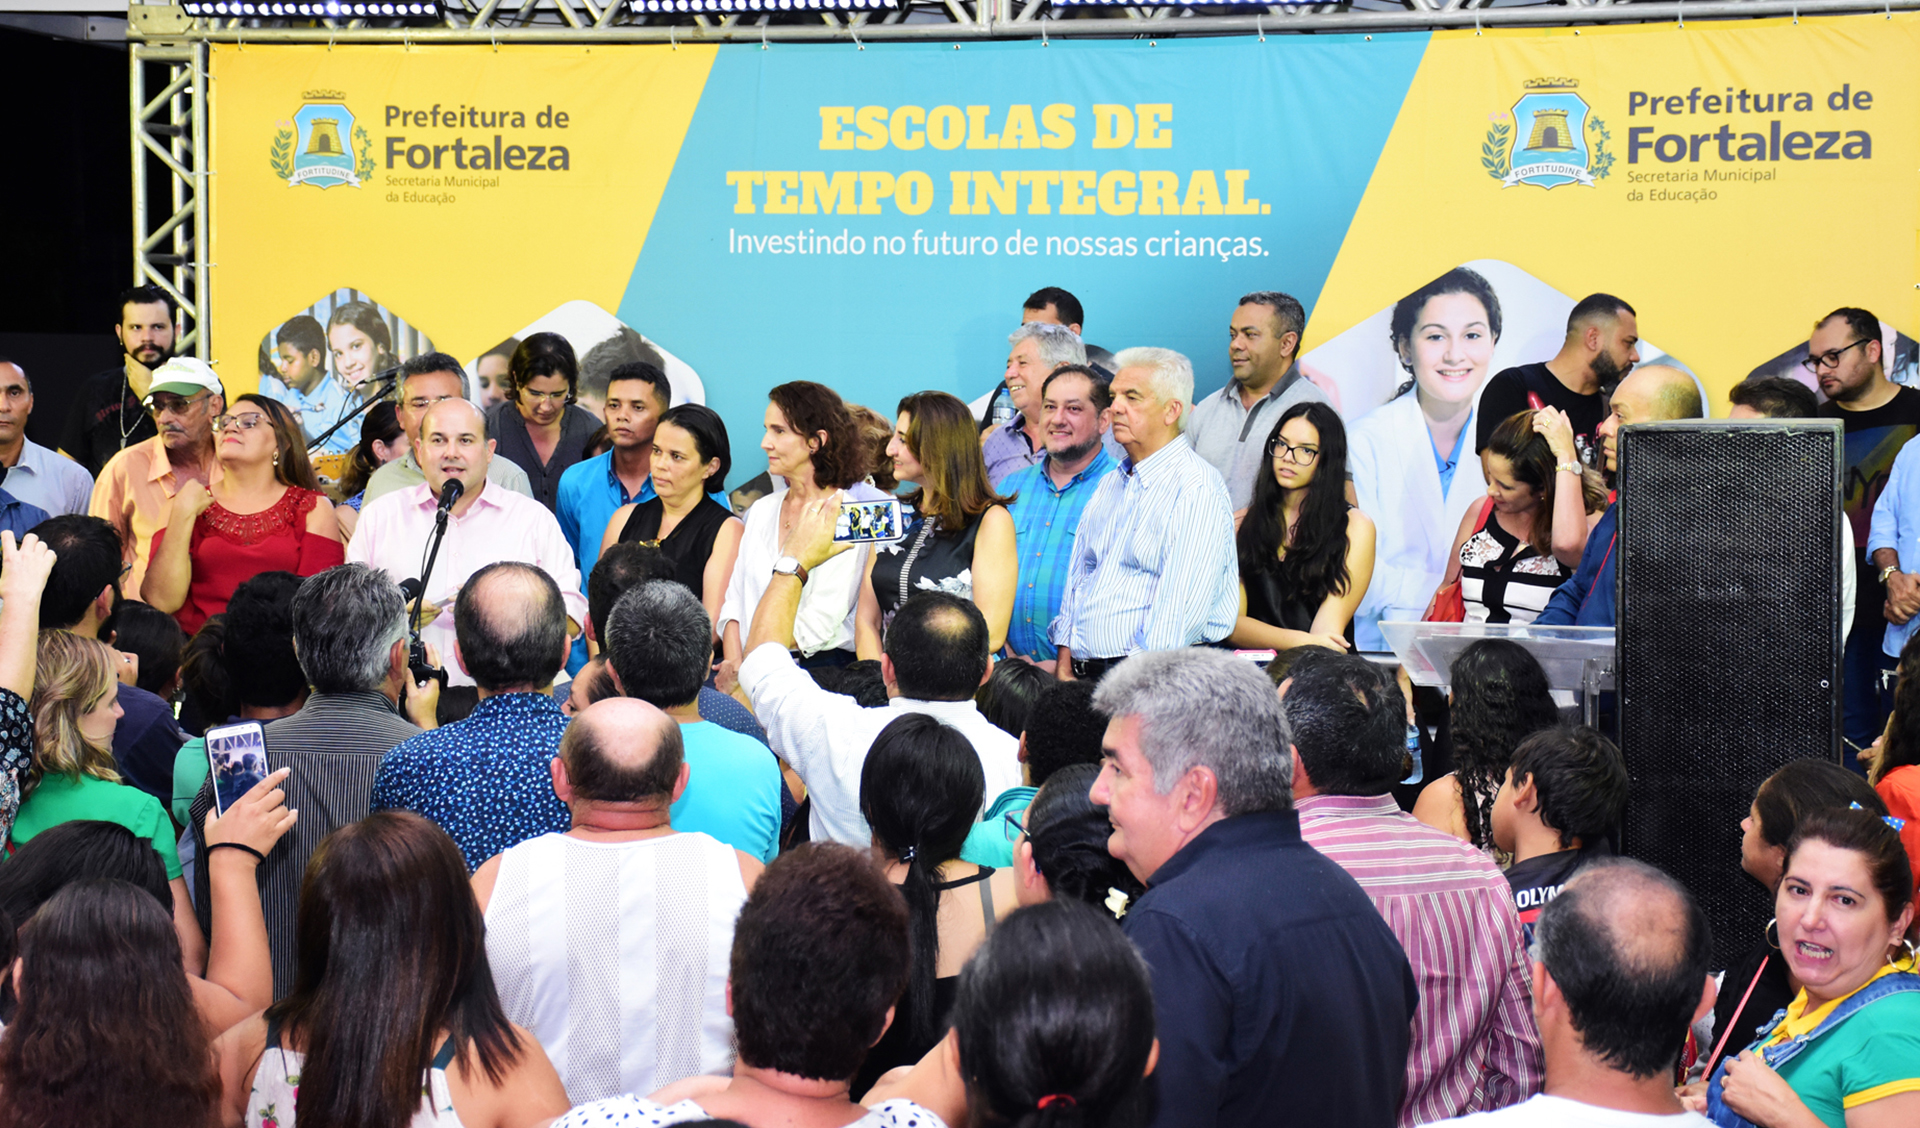 prefeito roberto claudio discursa num palco, rodeado de dezenas de pessoas